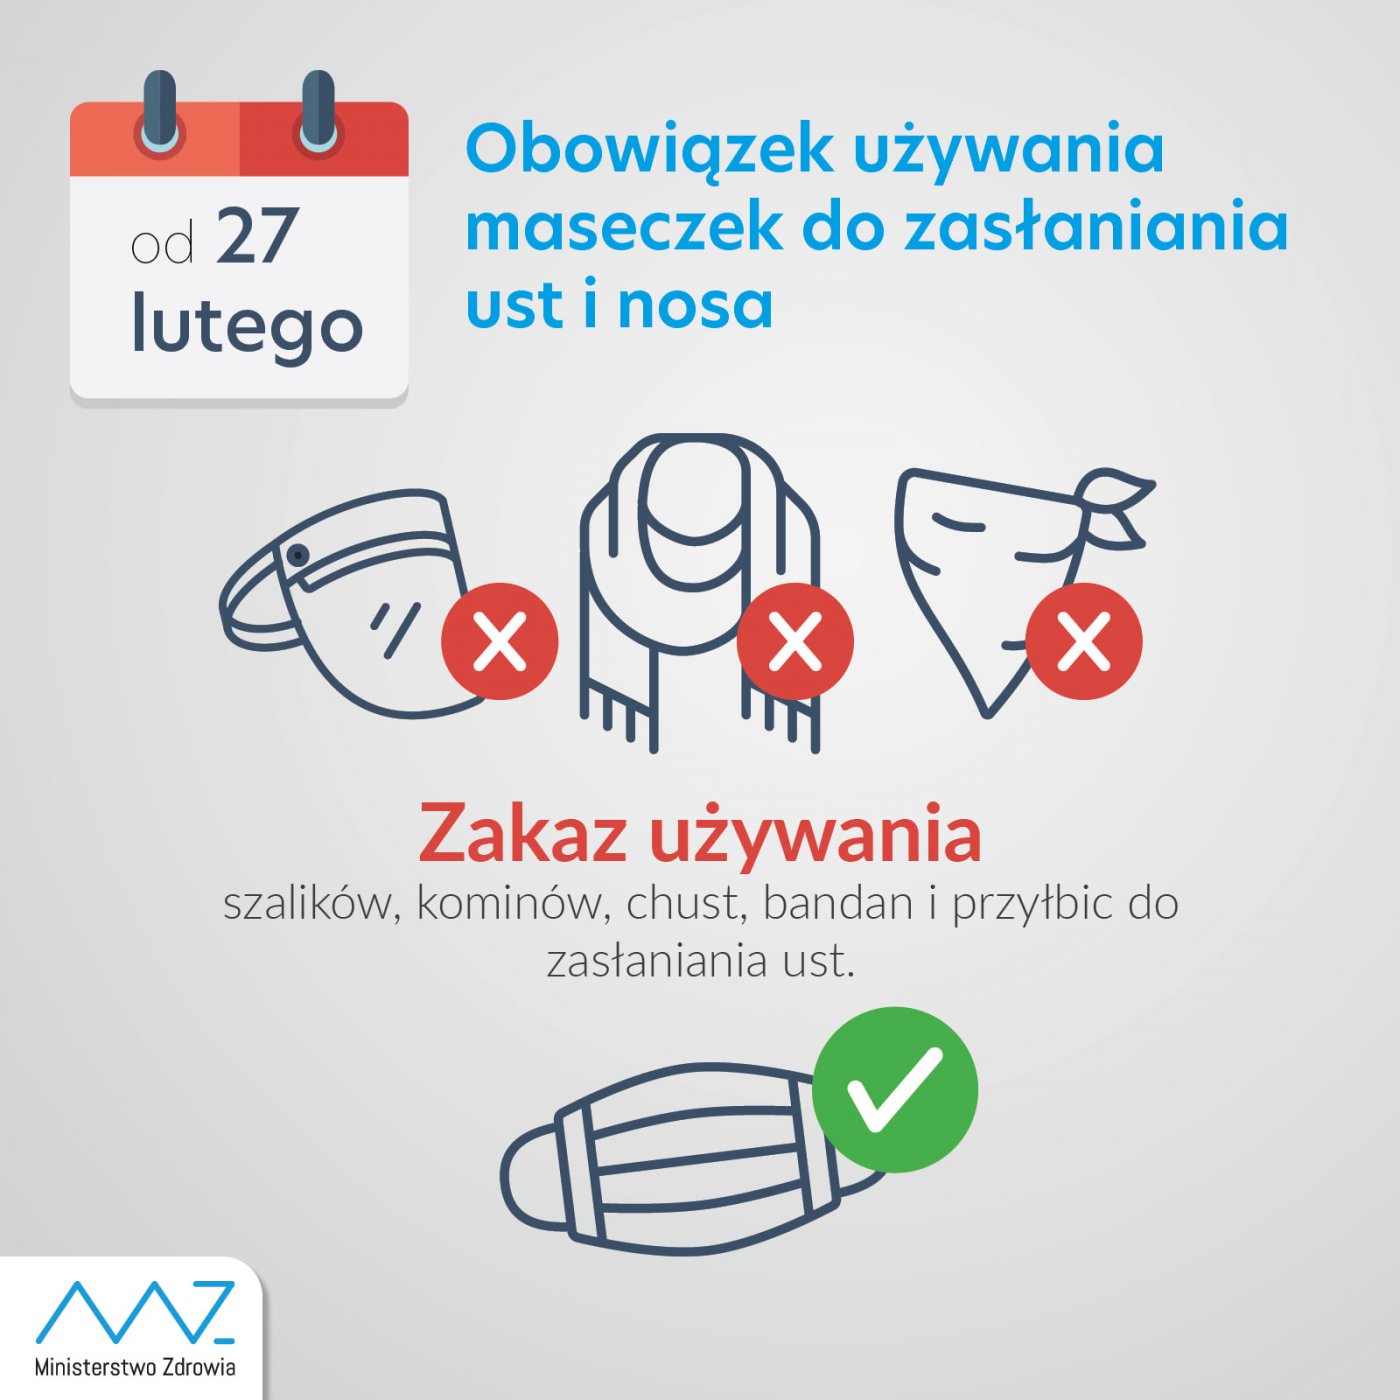 Plakat Ministerstwa Zdrowia: od 27 lutego obowiązek używania maseczek do zasłaniania ust i nosa. Zakaz używania szalików, kominów, chust, bandan i przyłbic do zasłania ust.